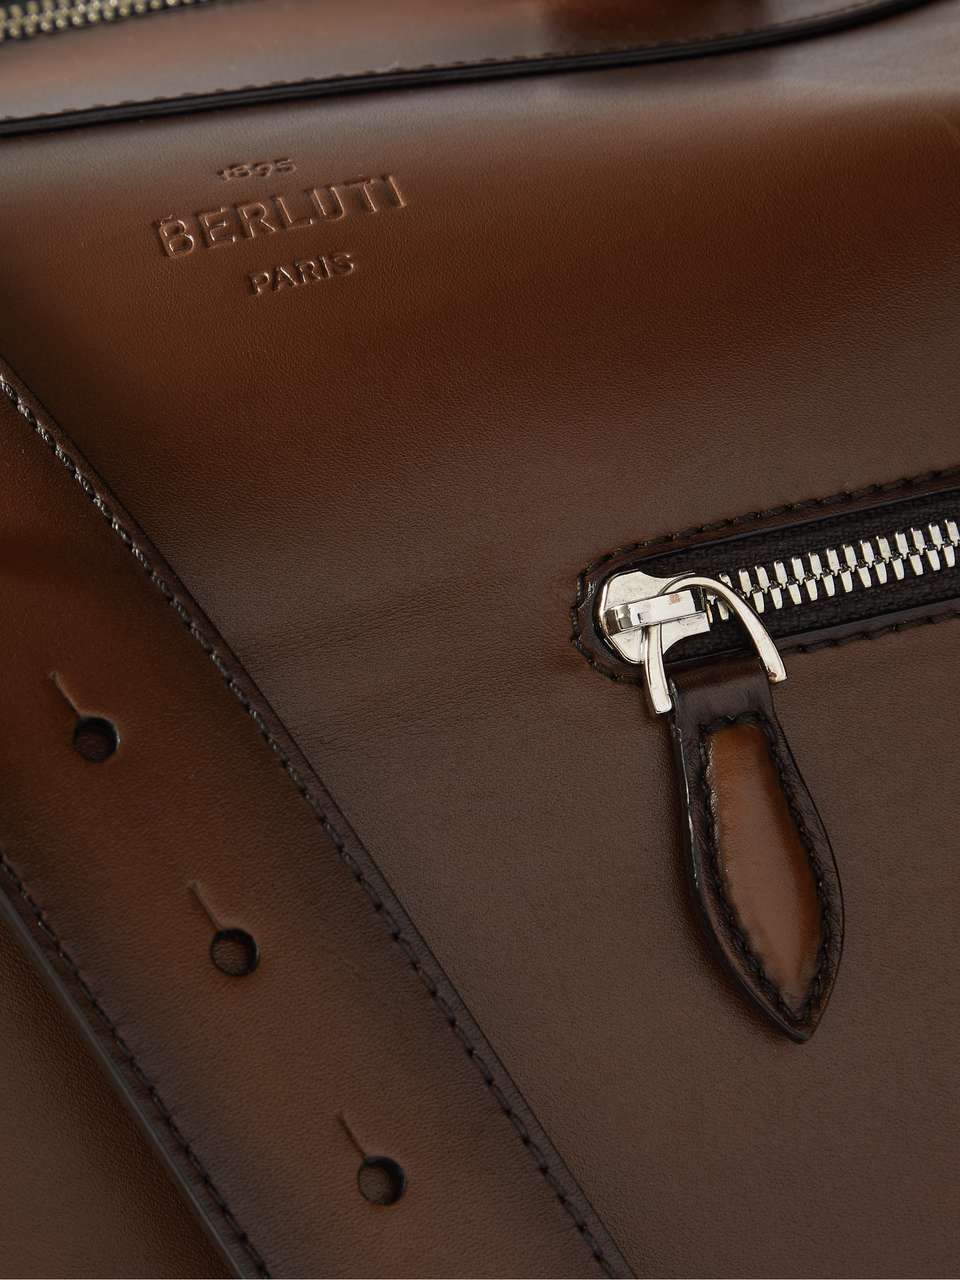 BERLUTI Venezia Leather Holdall Bag for Men | MR PORTER